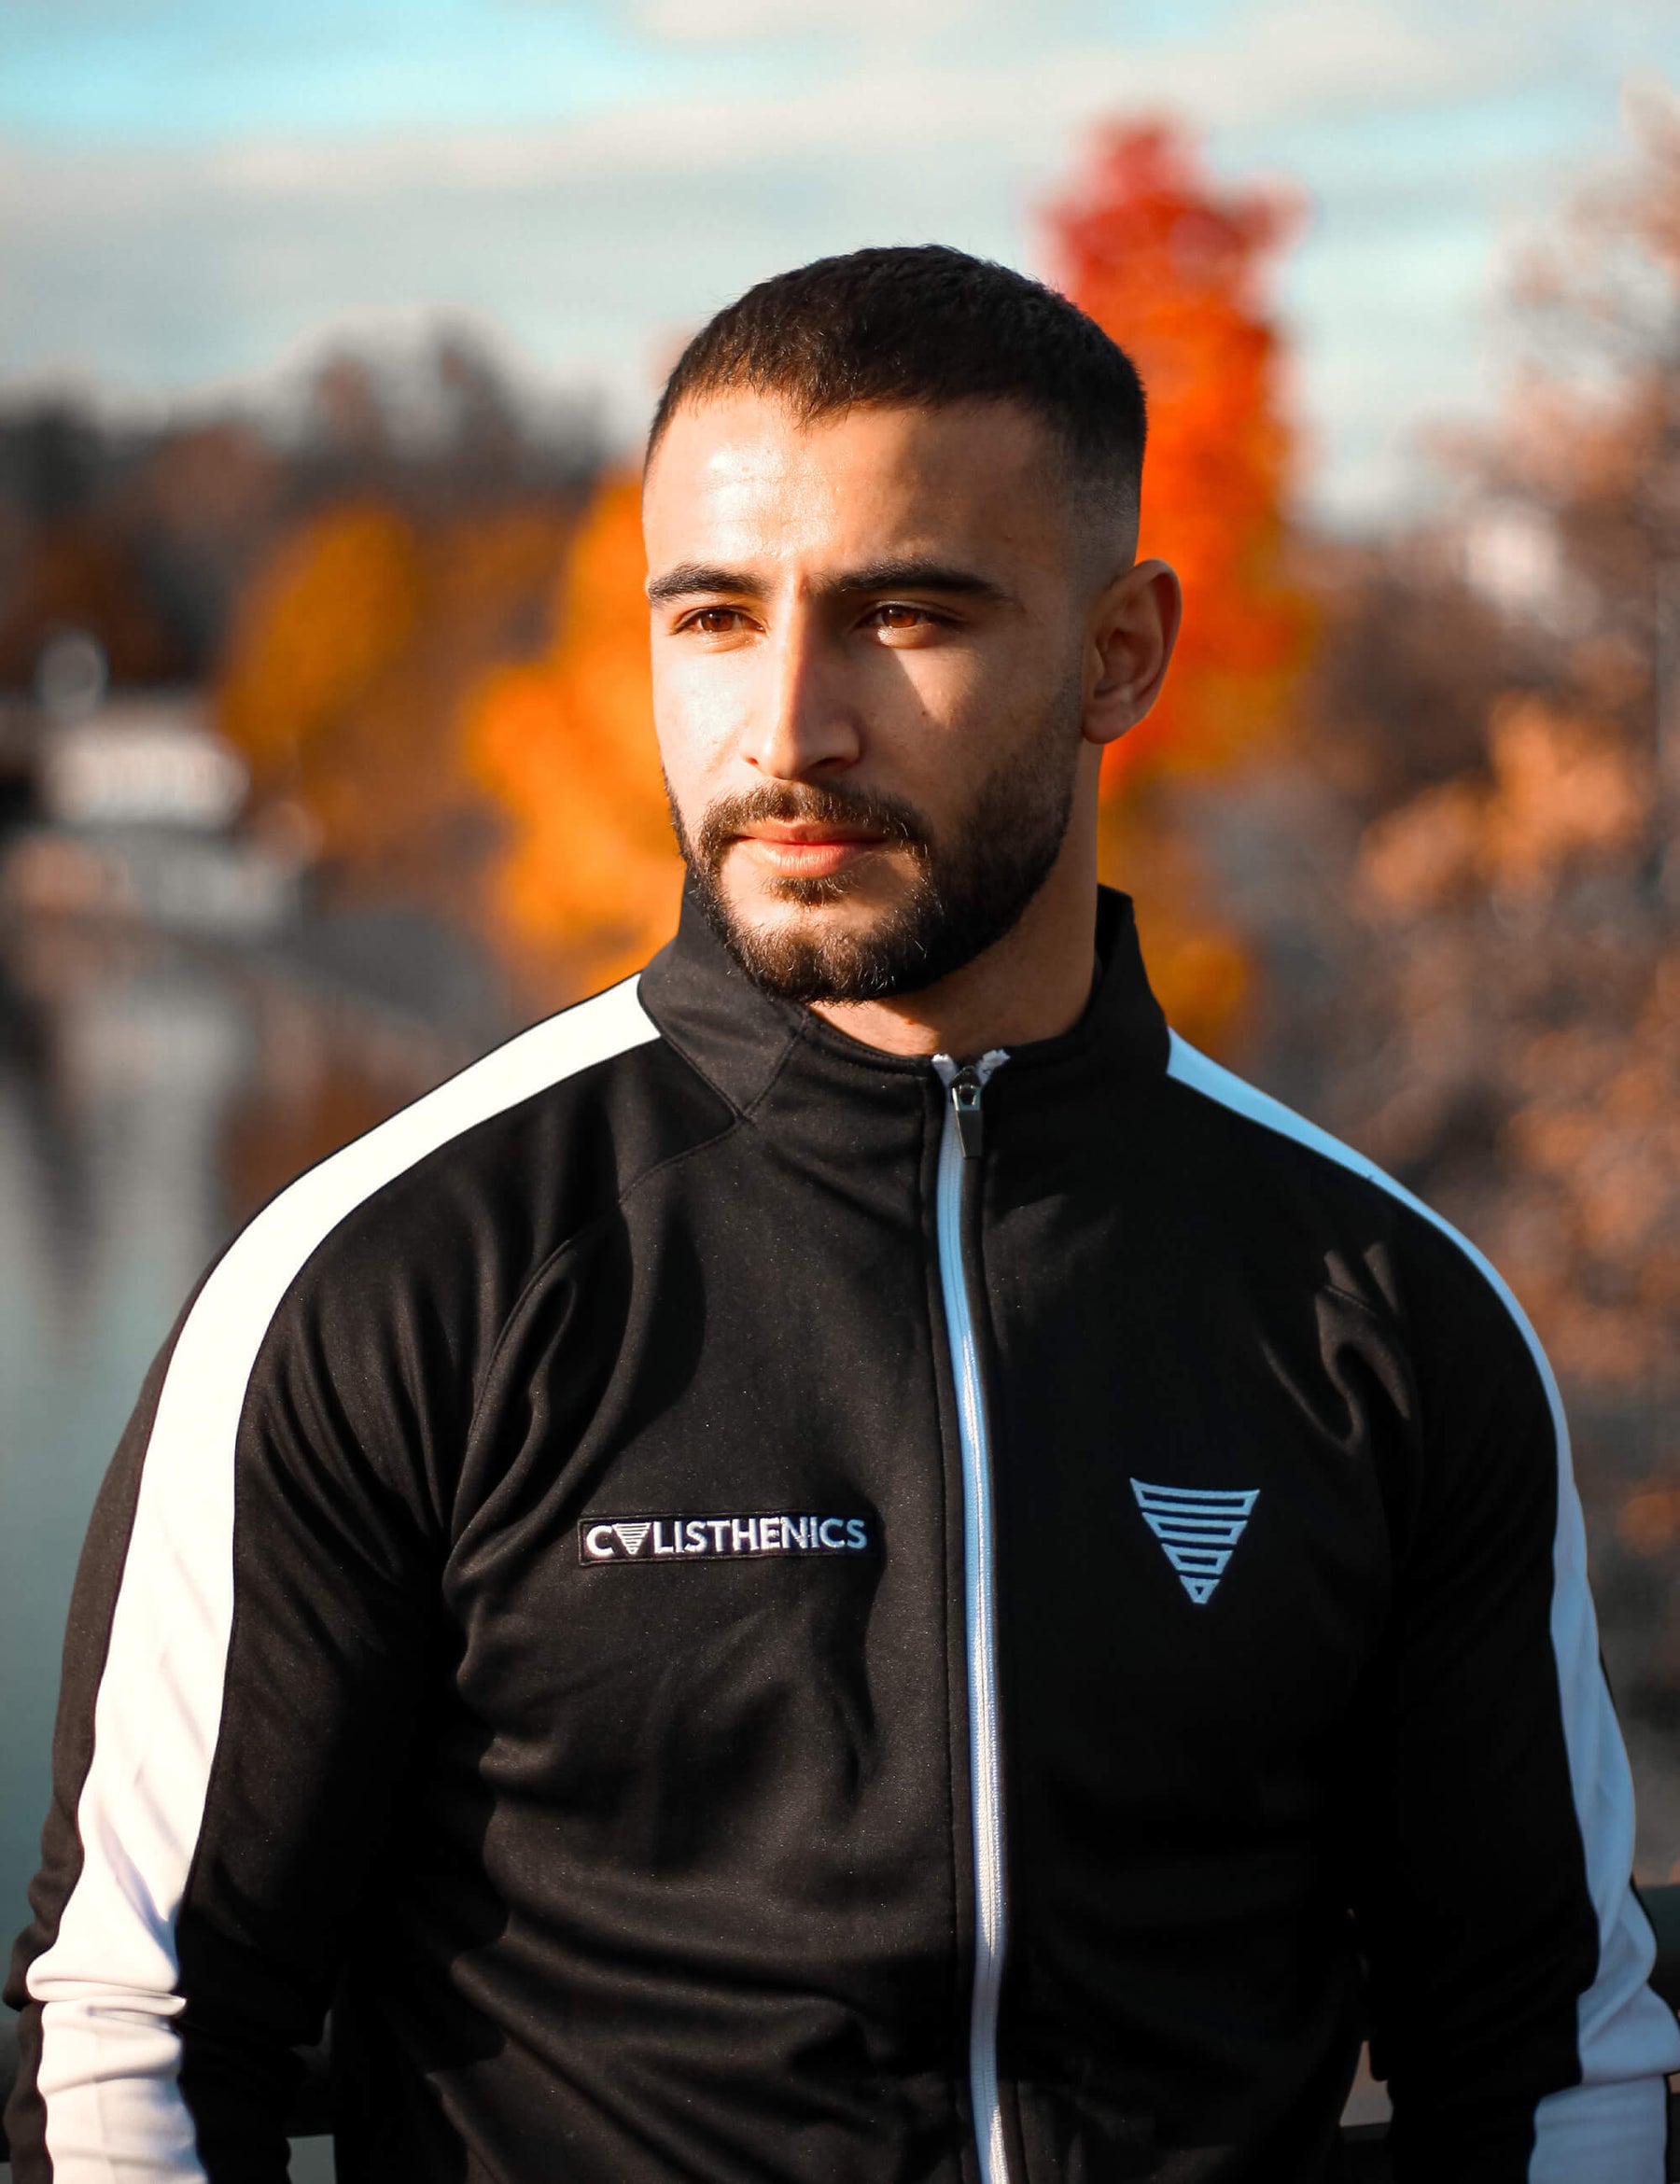 calisthenics athlete wearing a black/white calisthenics jacket